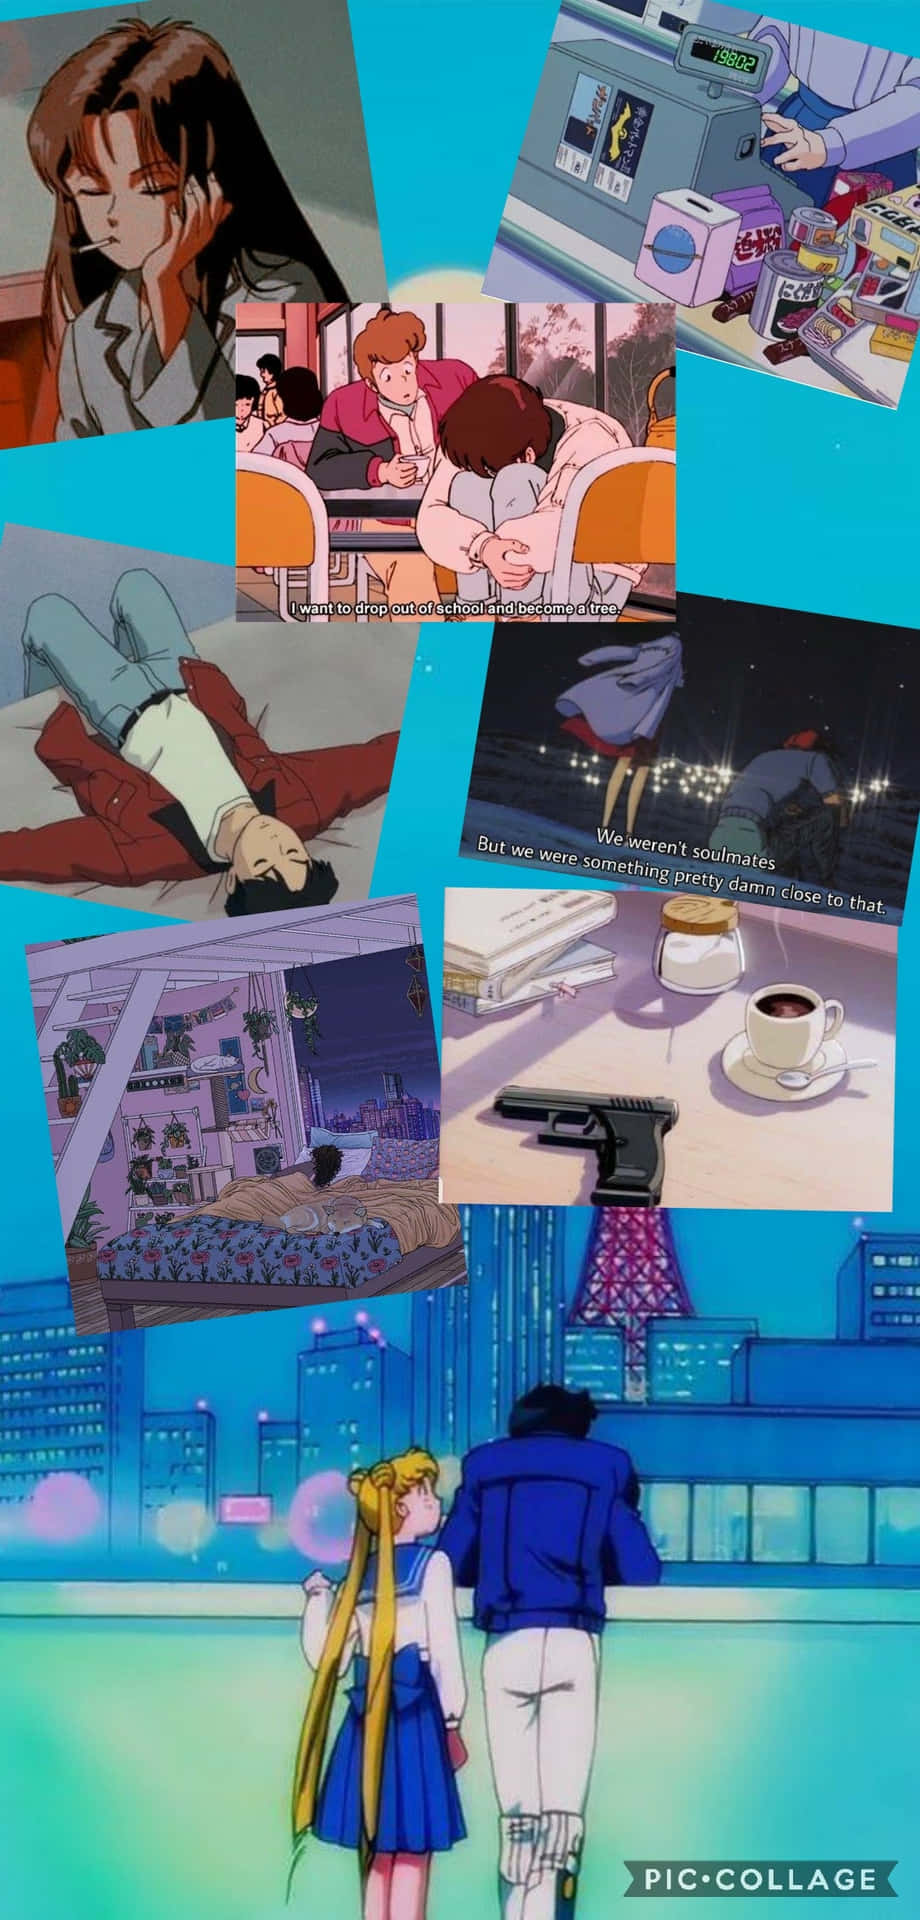 Endrömmande Tjejs Syn På 90-talets Anime-estetik På Skärmsläckaren. Wallpaper